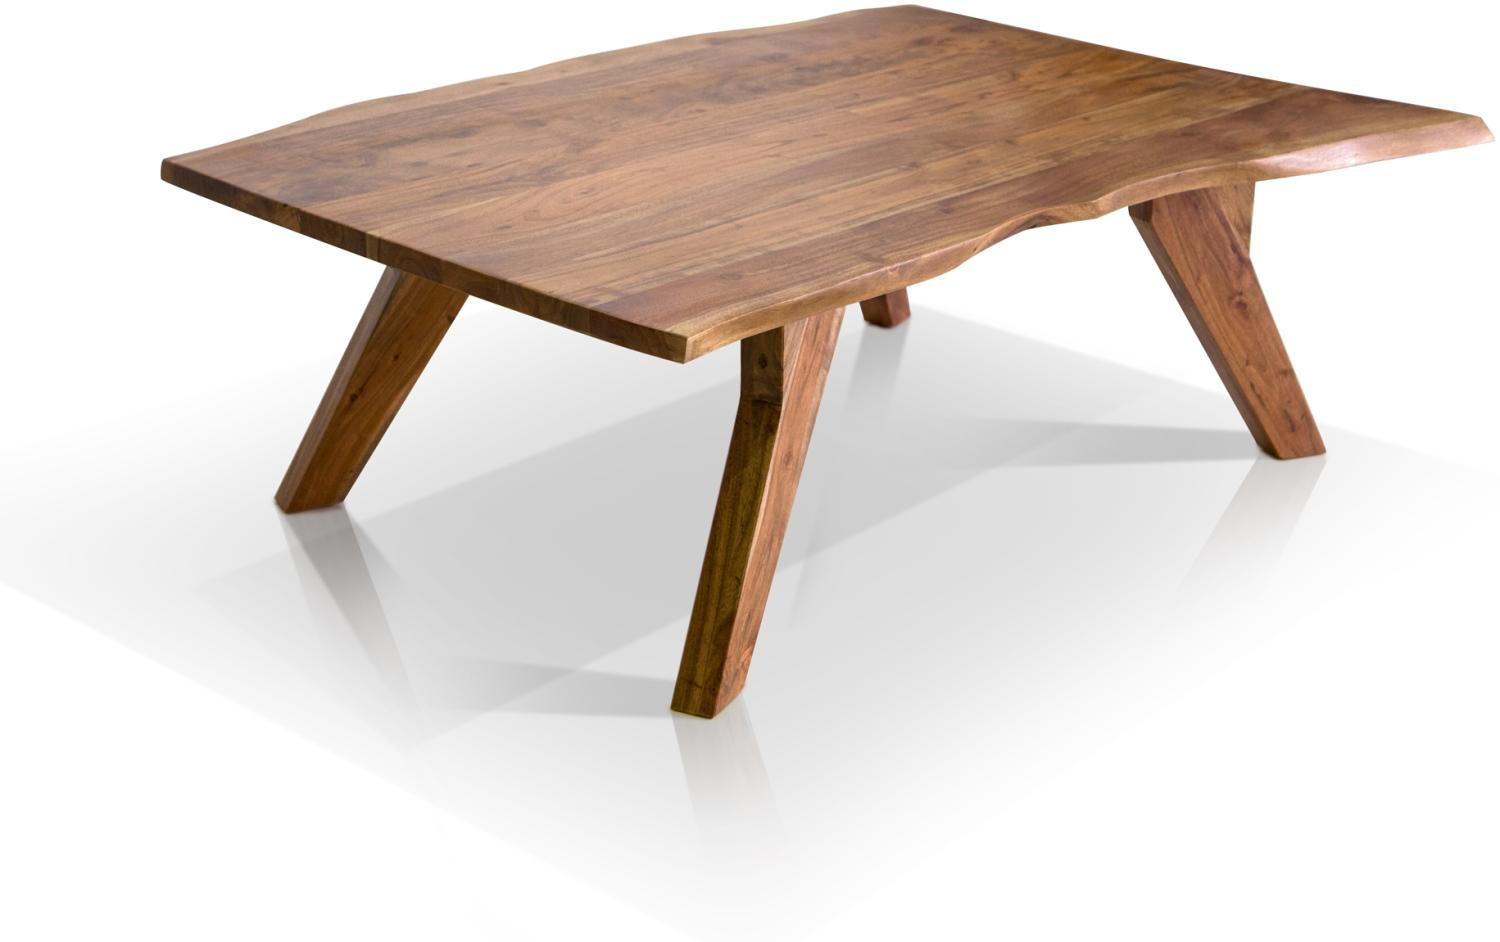 Möbel-Eins GERA II Couchtisch 120x80 cm, Material Massivholz, Akazie lackiert Bild 1